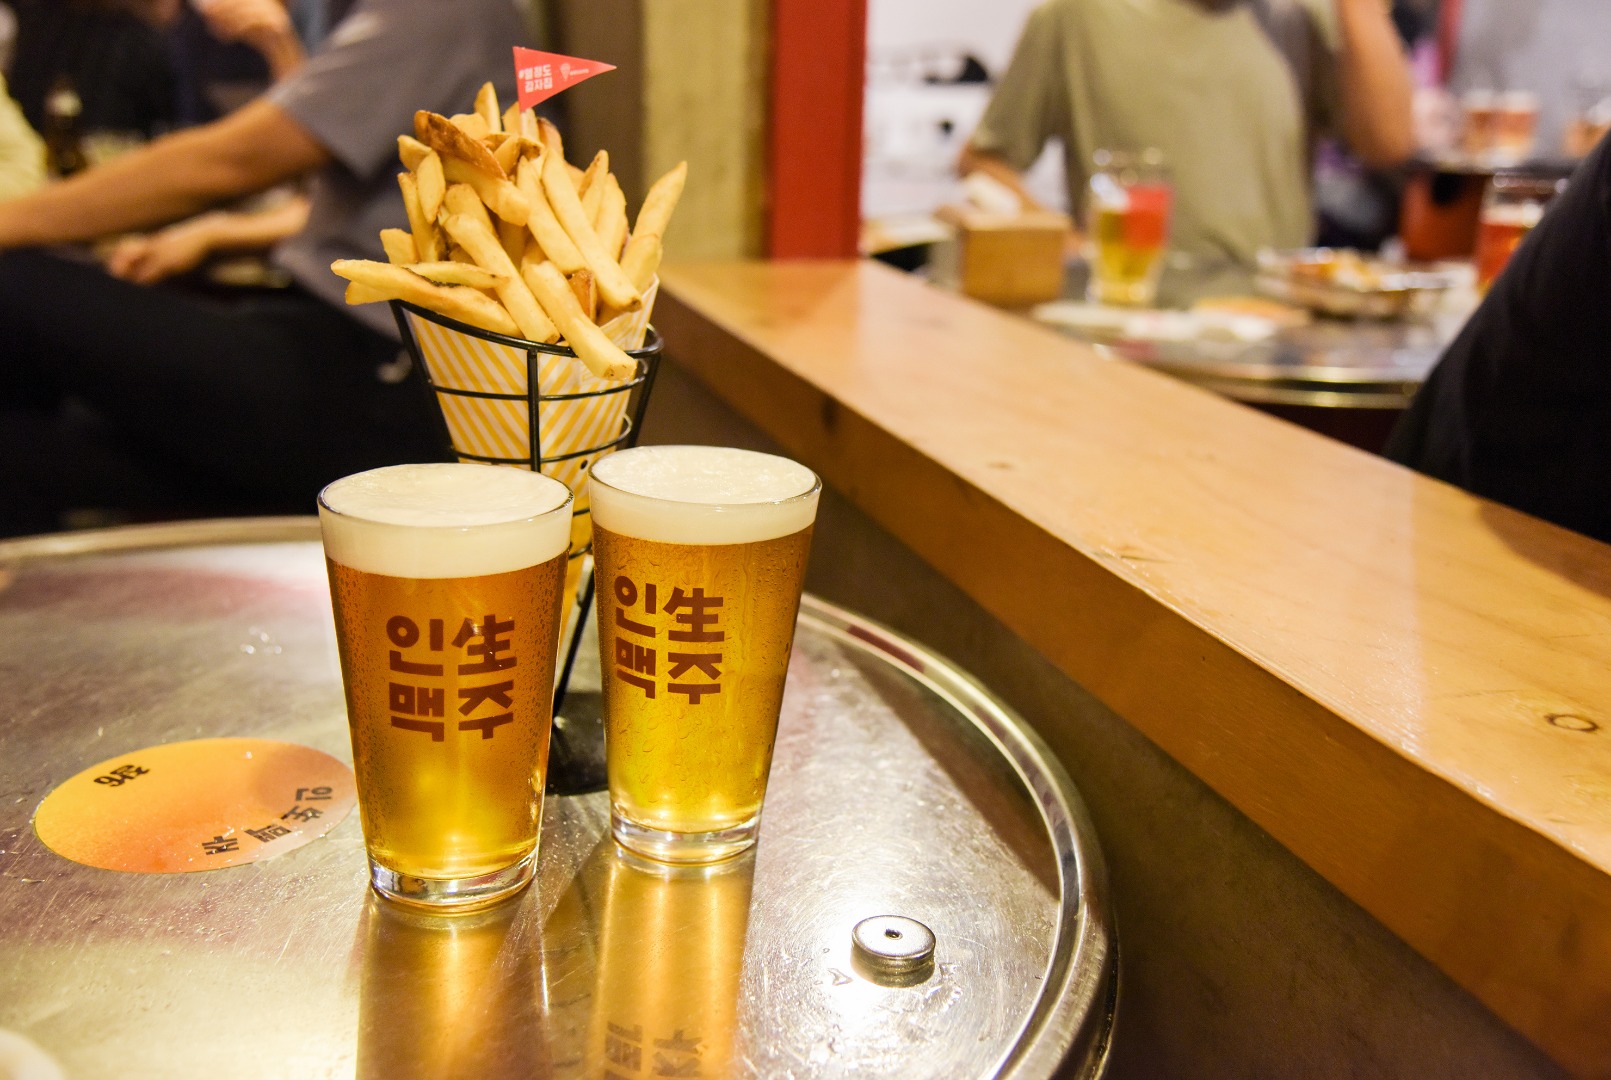 首爾熱情島土豆屋薯條 & 啤酒優惠套餐